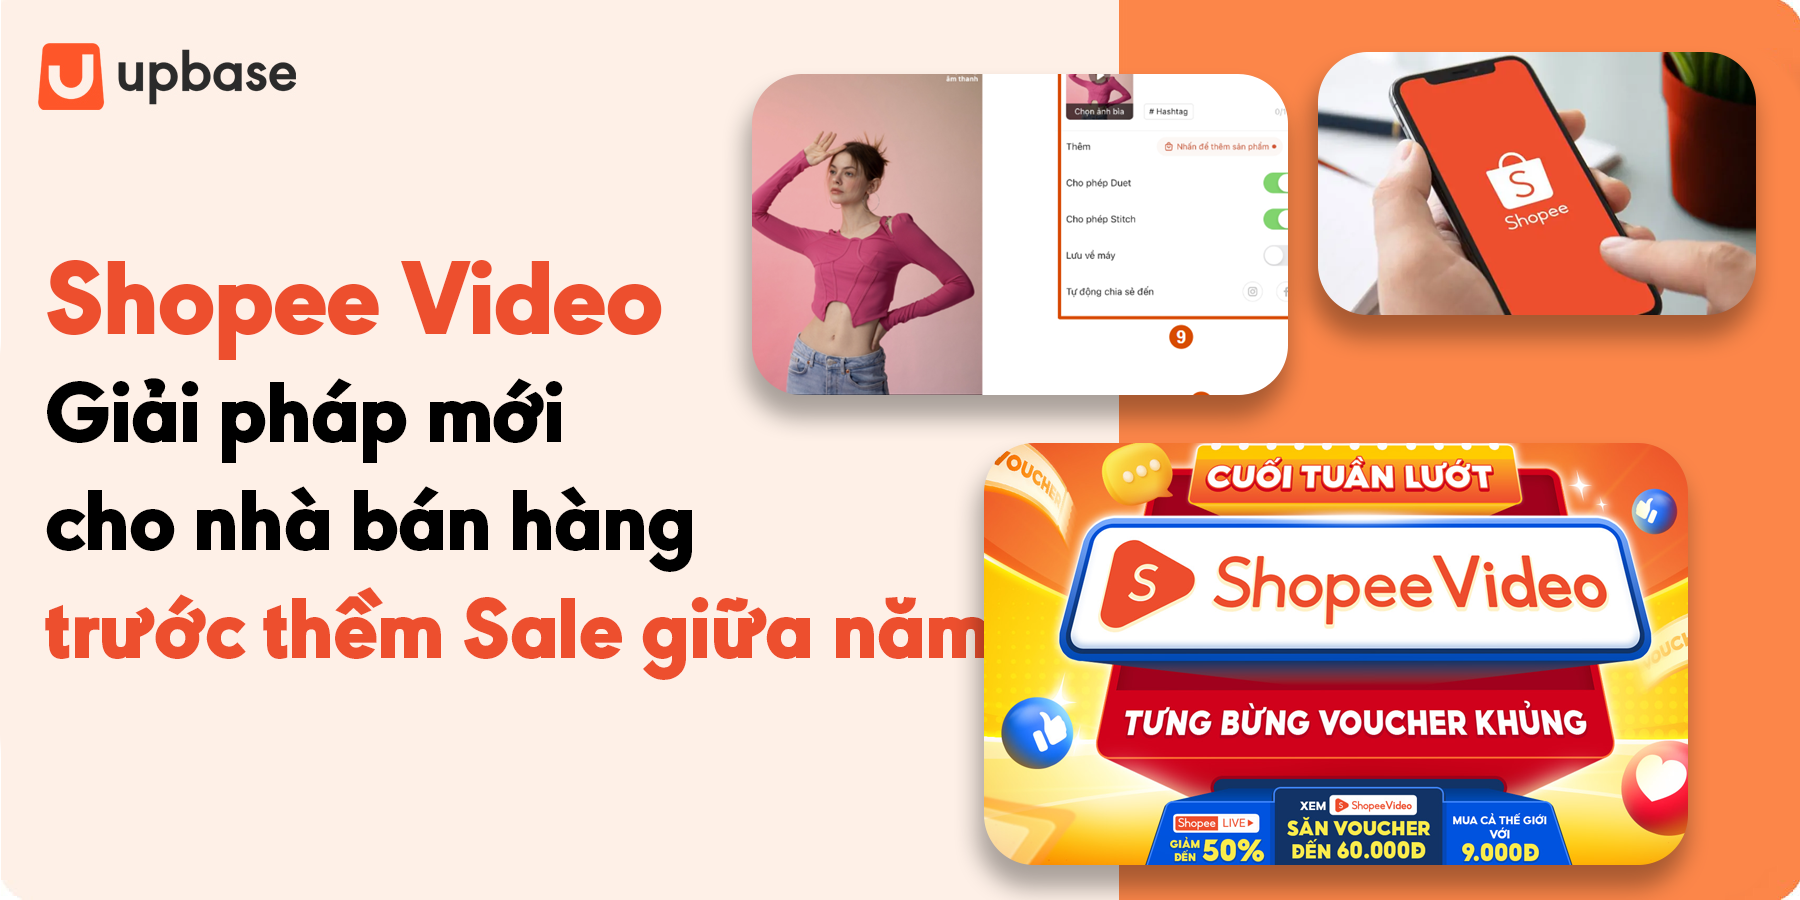 Shopee Video - Giải pháp mới cho nhà bán hàng trước thềm Sale giữa năm